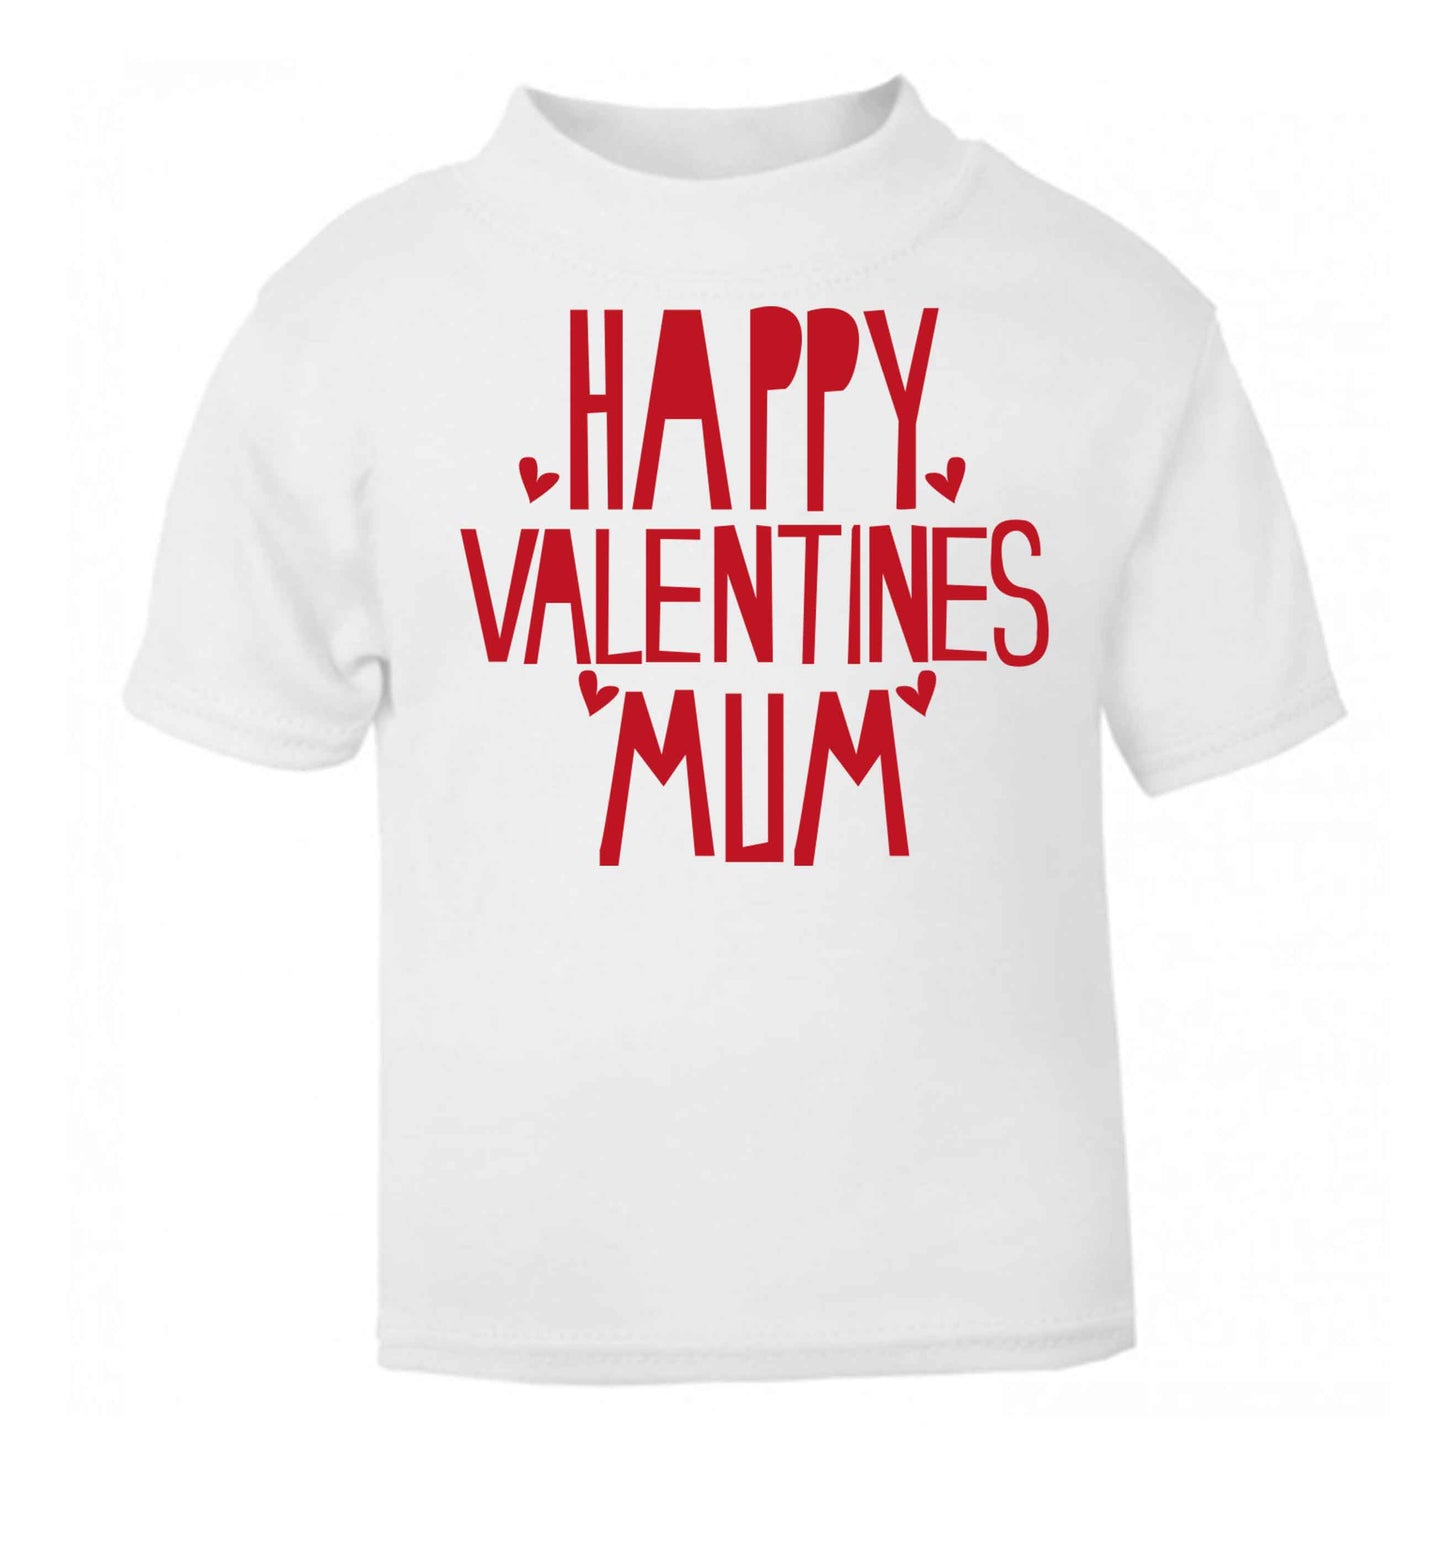 Happy valentines mum white baby toddler Tshirt 2 Years